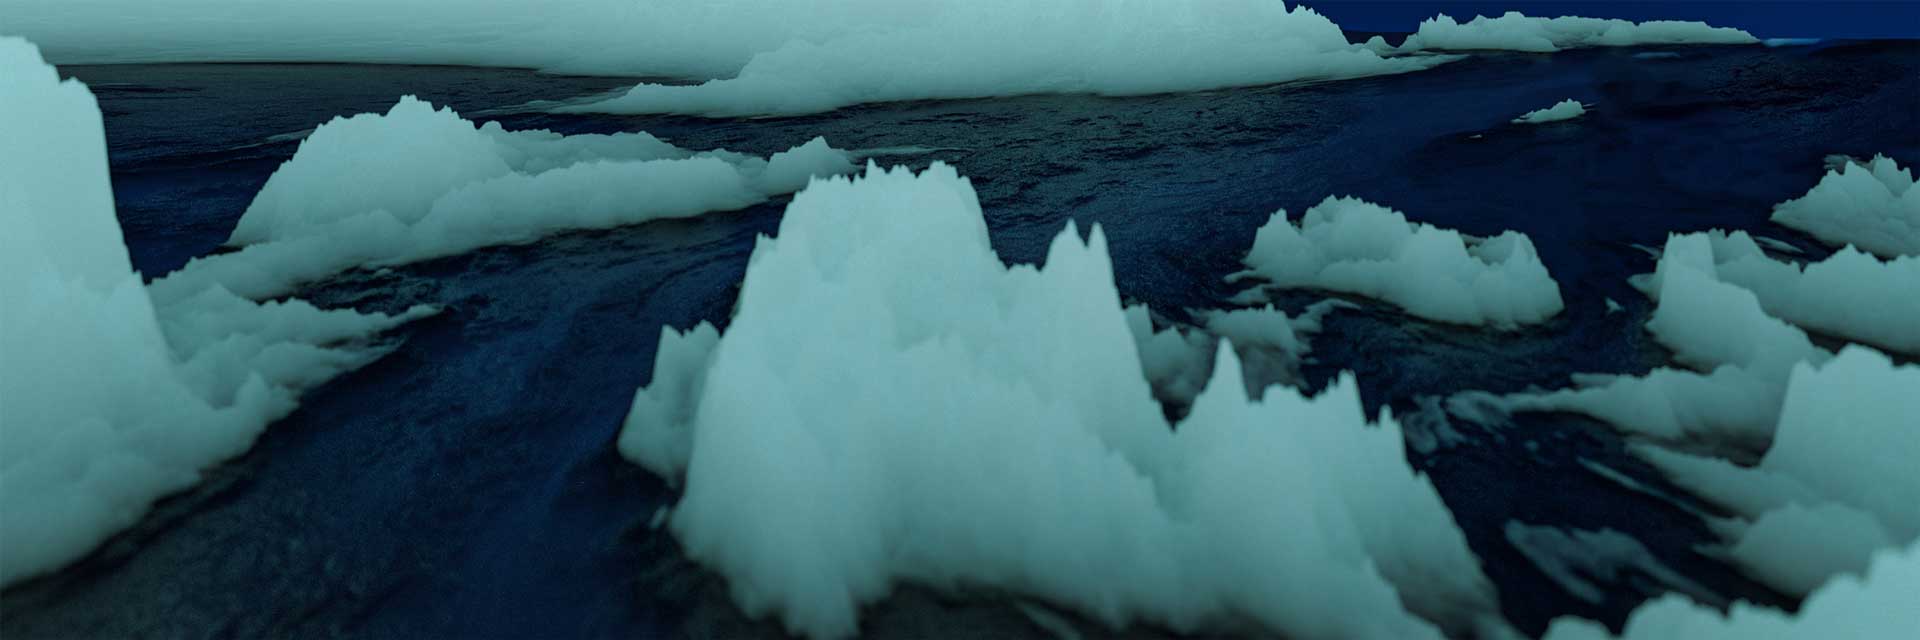 3d blender procedural landscape iceberg